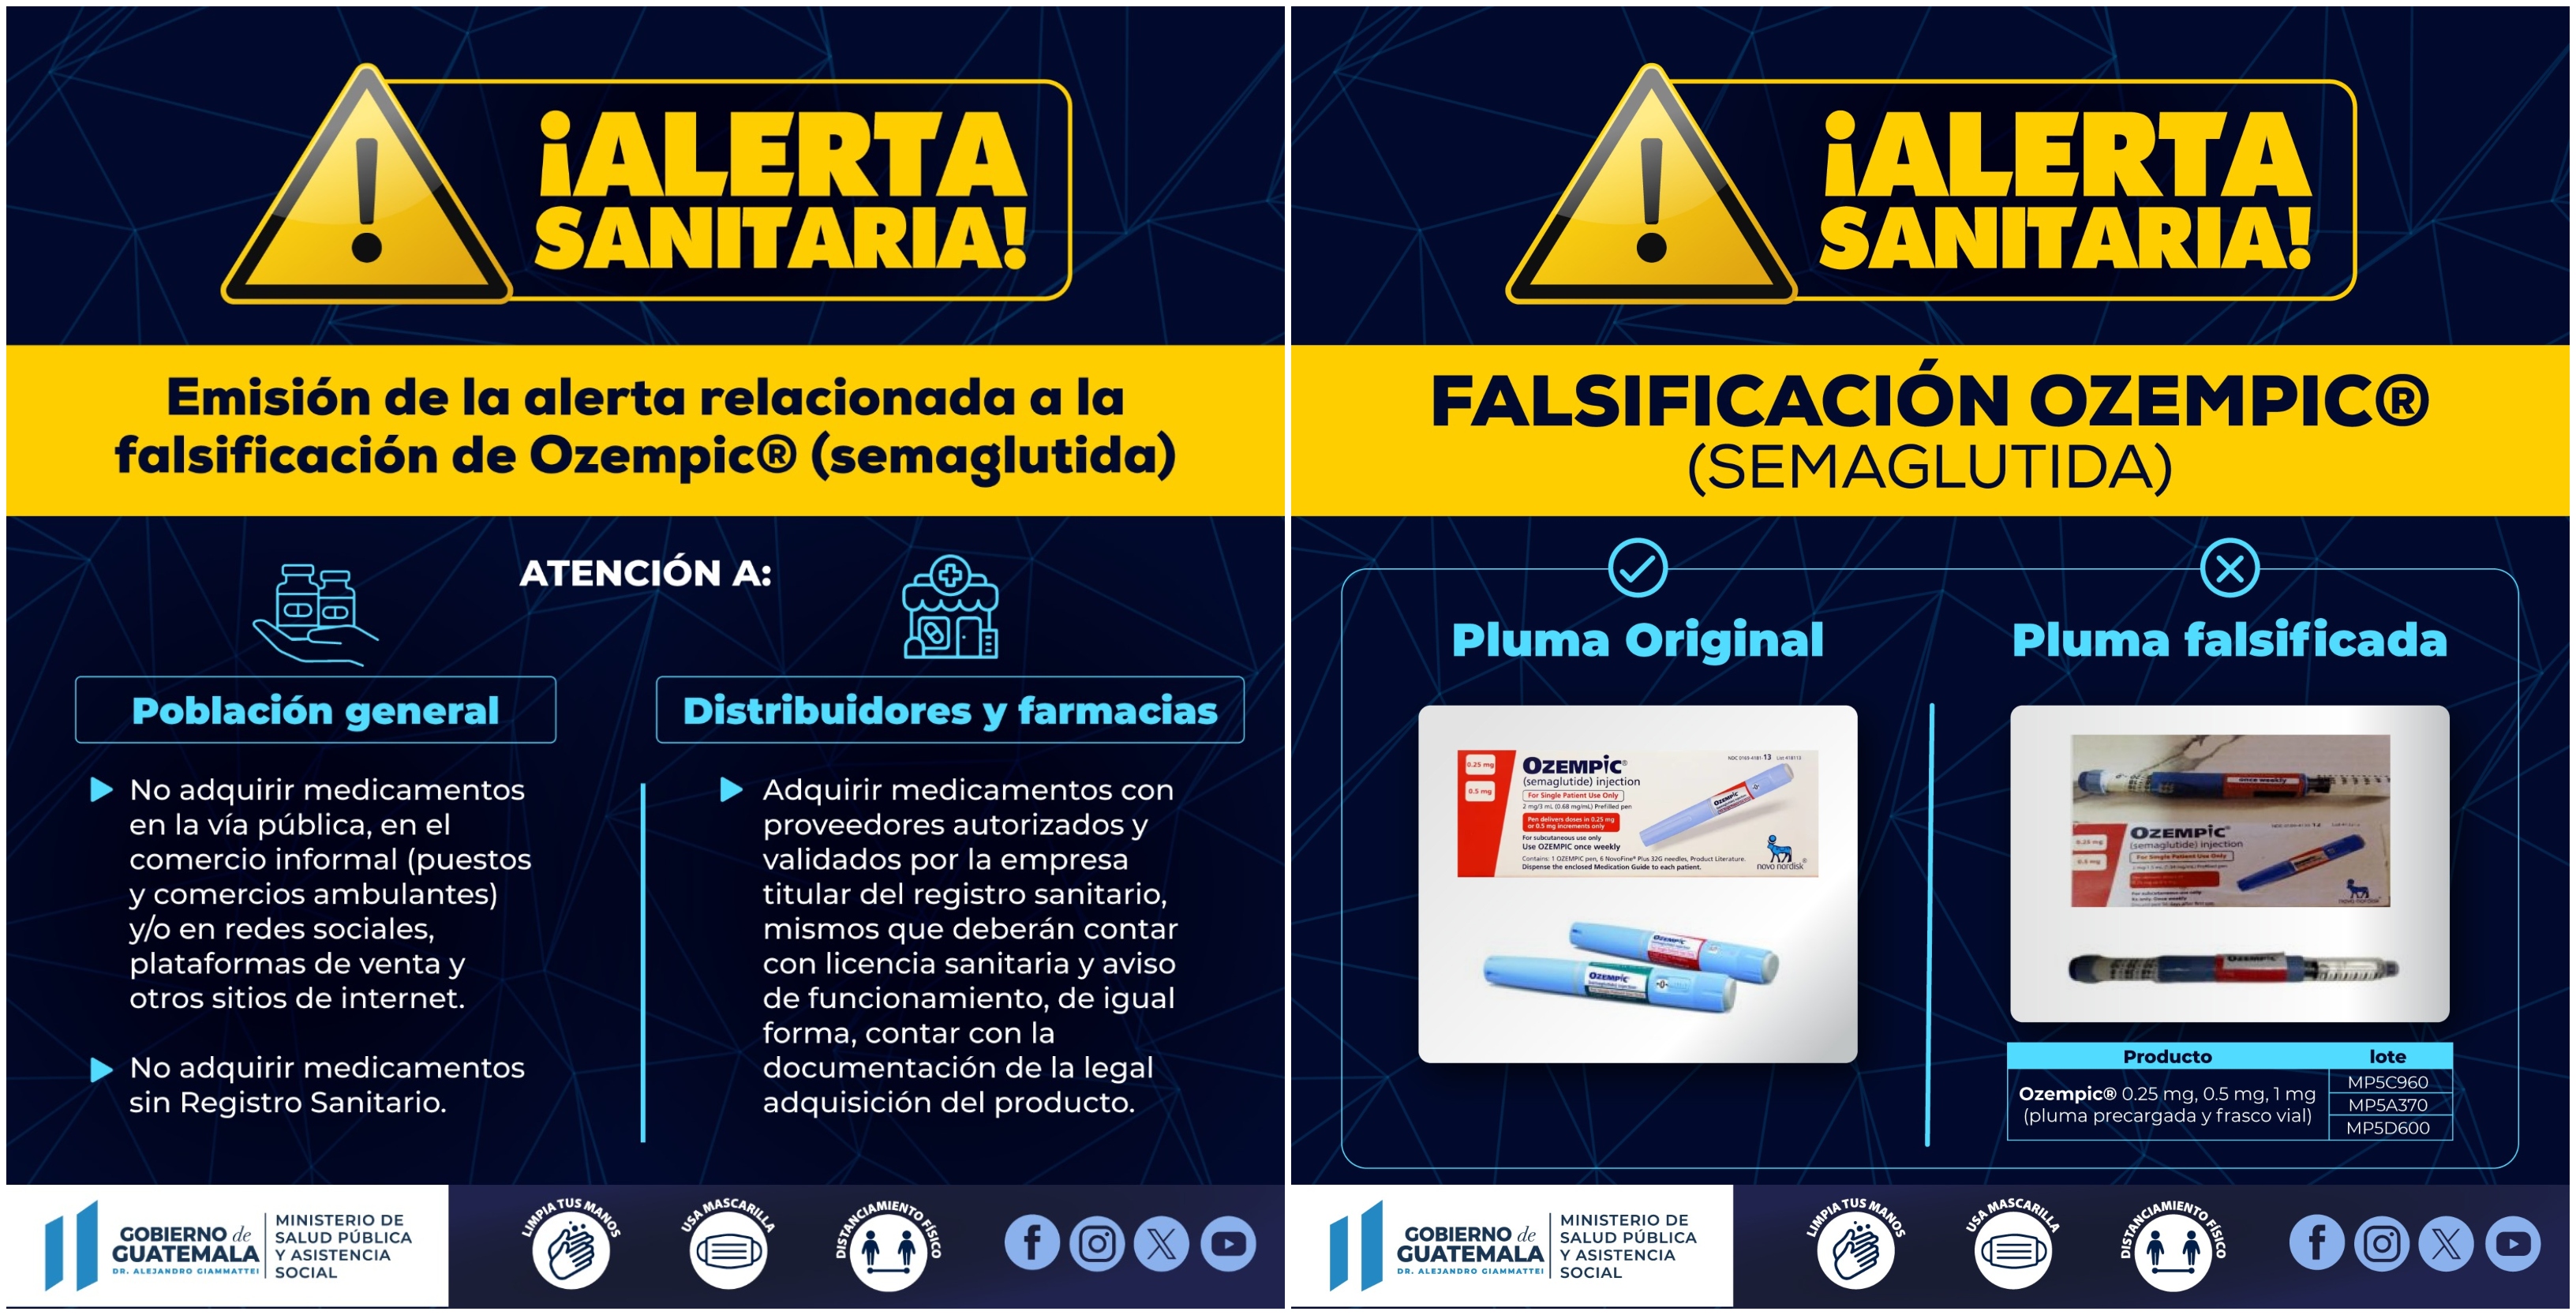 El Ministerio de Salud Pública y Asistencia Social alerta este17 de diciembre sobre la venta en redes sociales, y otras formas, de dos medicamentos falsifiacados que sirven para algún tipo de cáncer y la diabetes, confirman autoridades guatemaltecas. (Foto Prensa Libre: Hemeroteca PL).